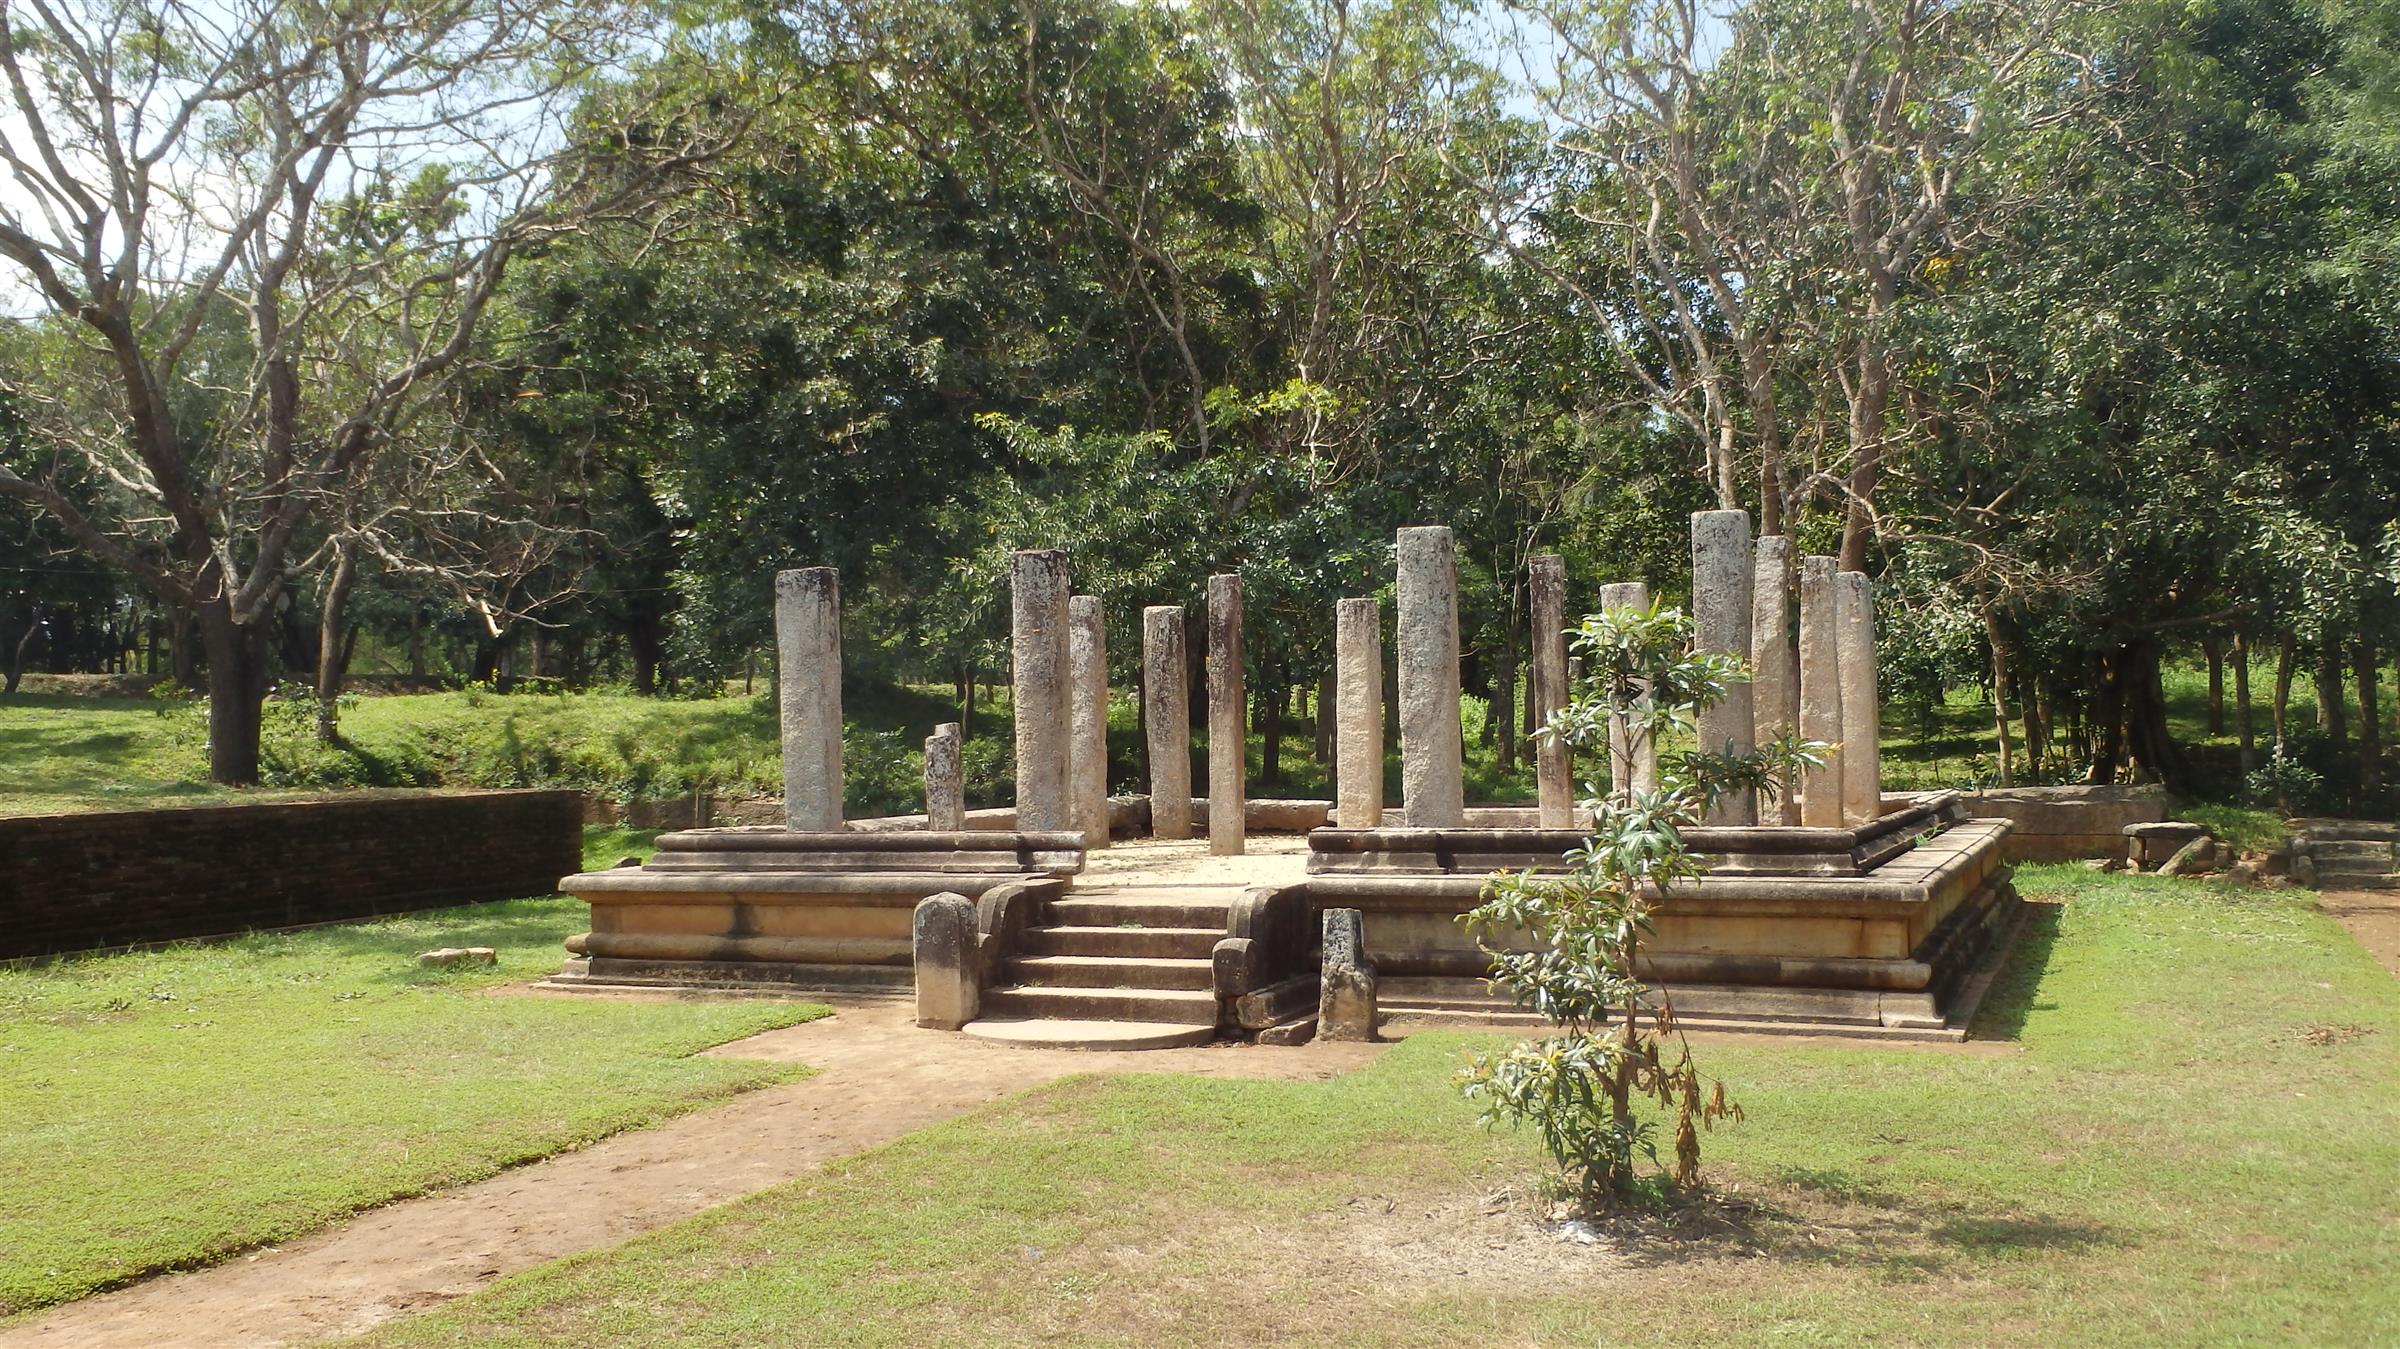 Mahasena Temple